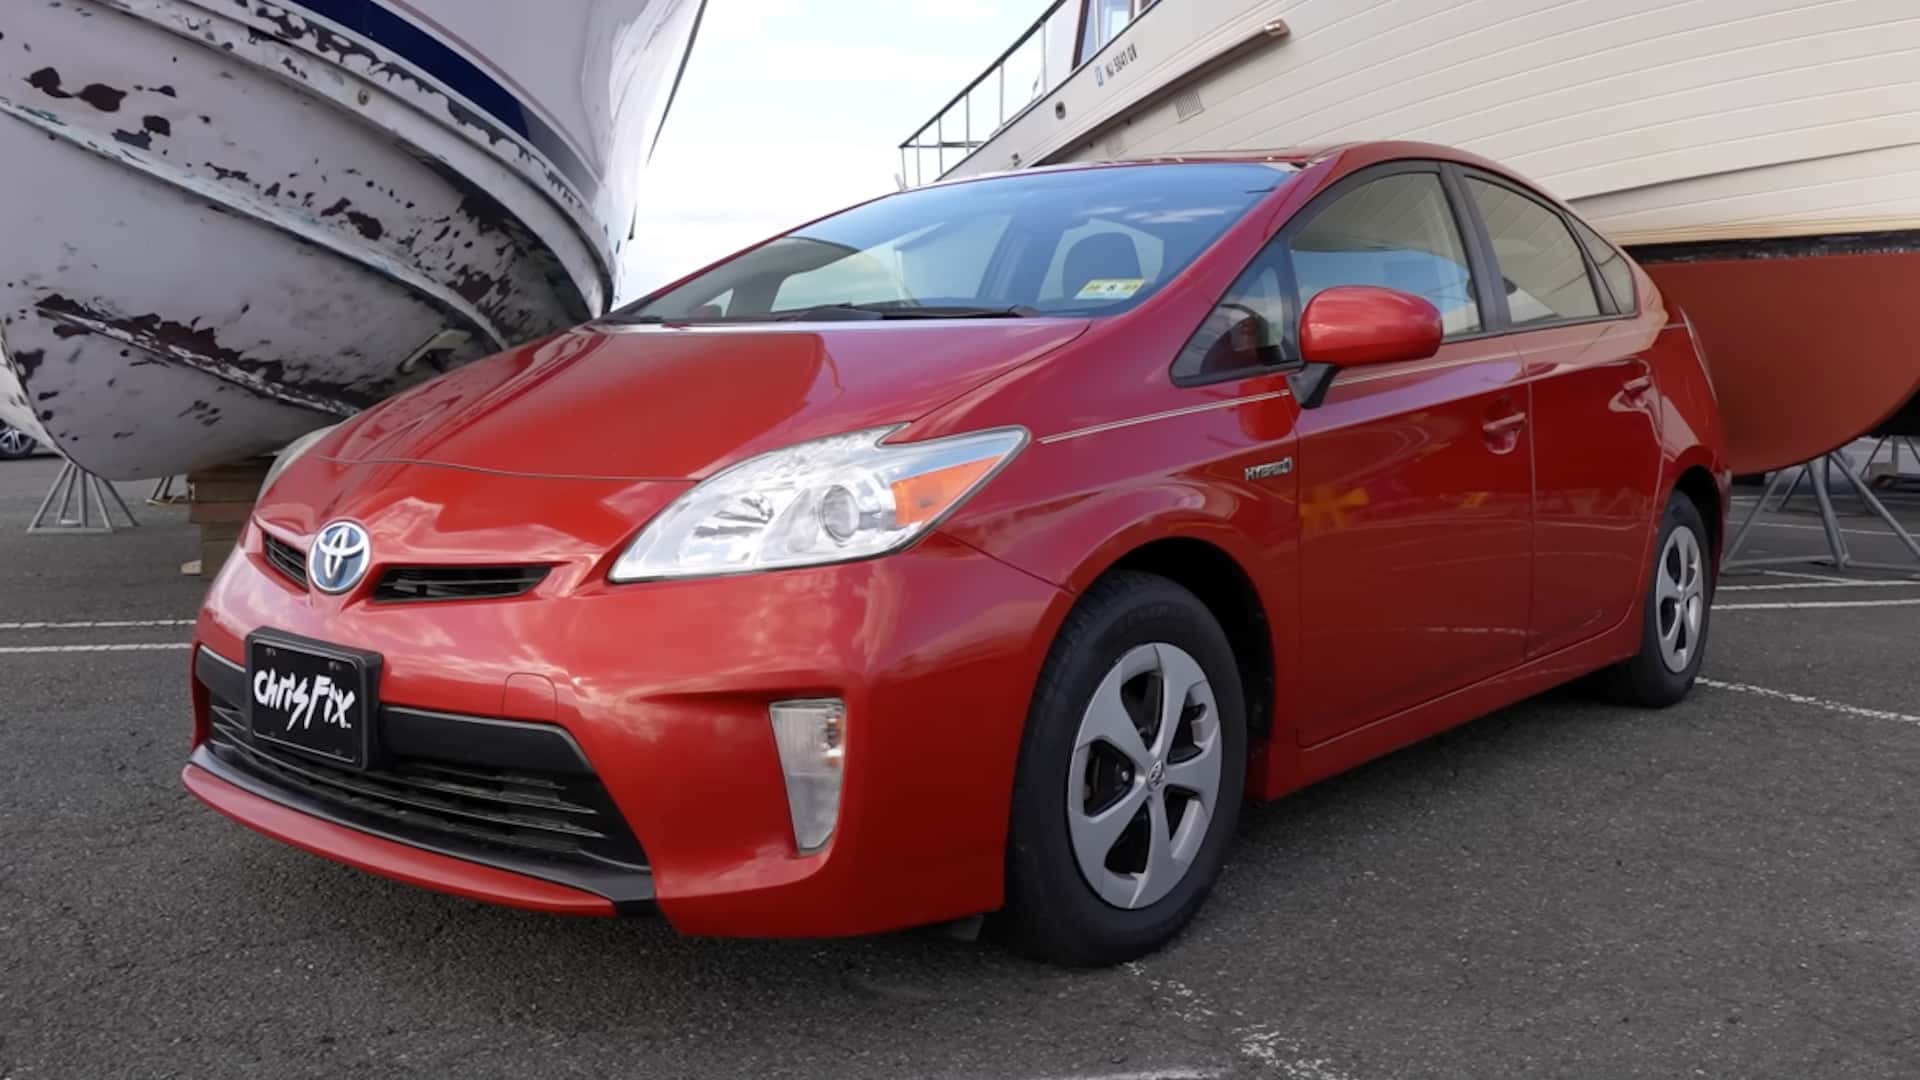 Tekintse meg a barkácsolt Toyota Prius akkumulátorcseréjét unalmas, mégis kielégítő videóban